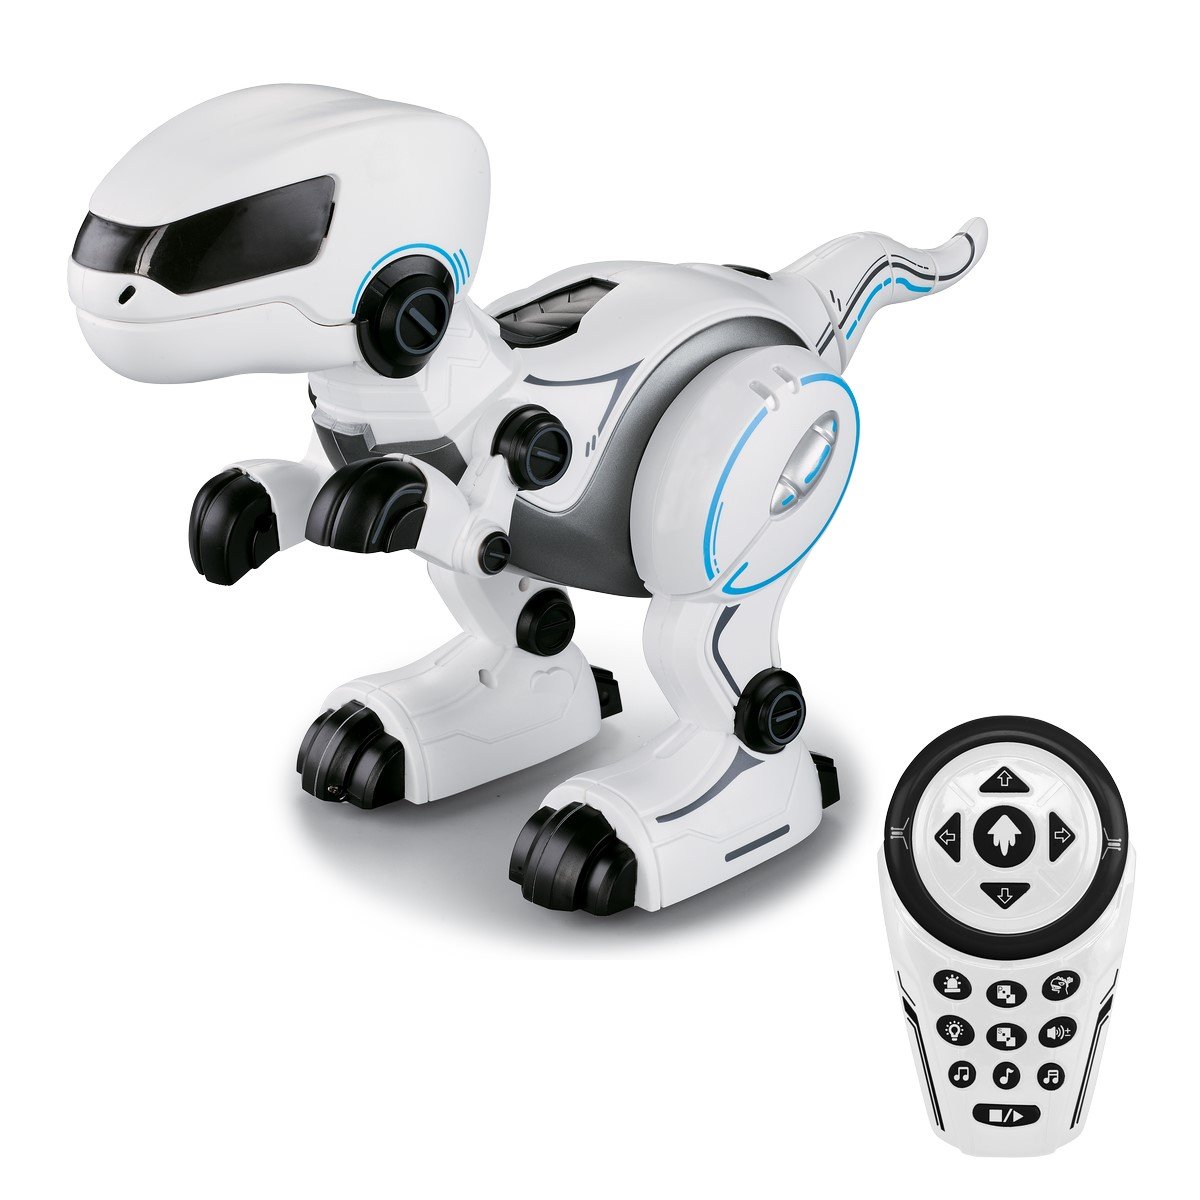 Robots jouets: Tous les robots jouets Lego, Ycoo, Silverlit…